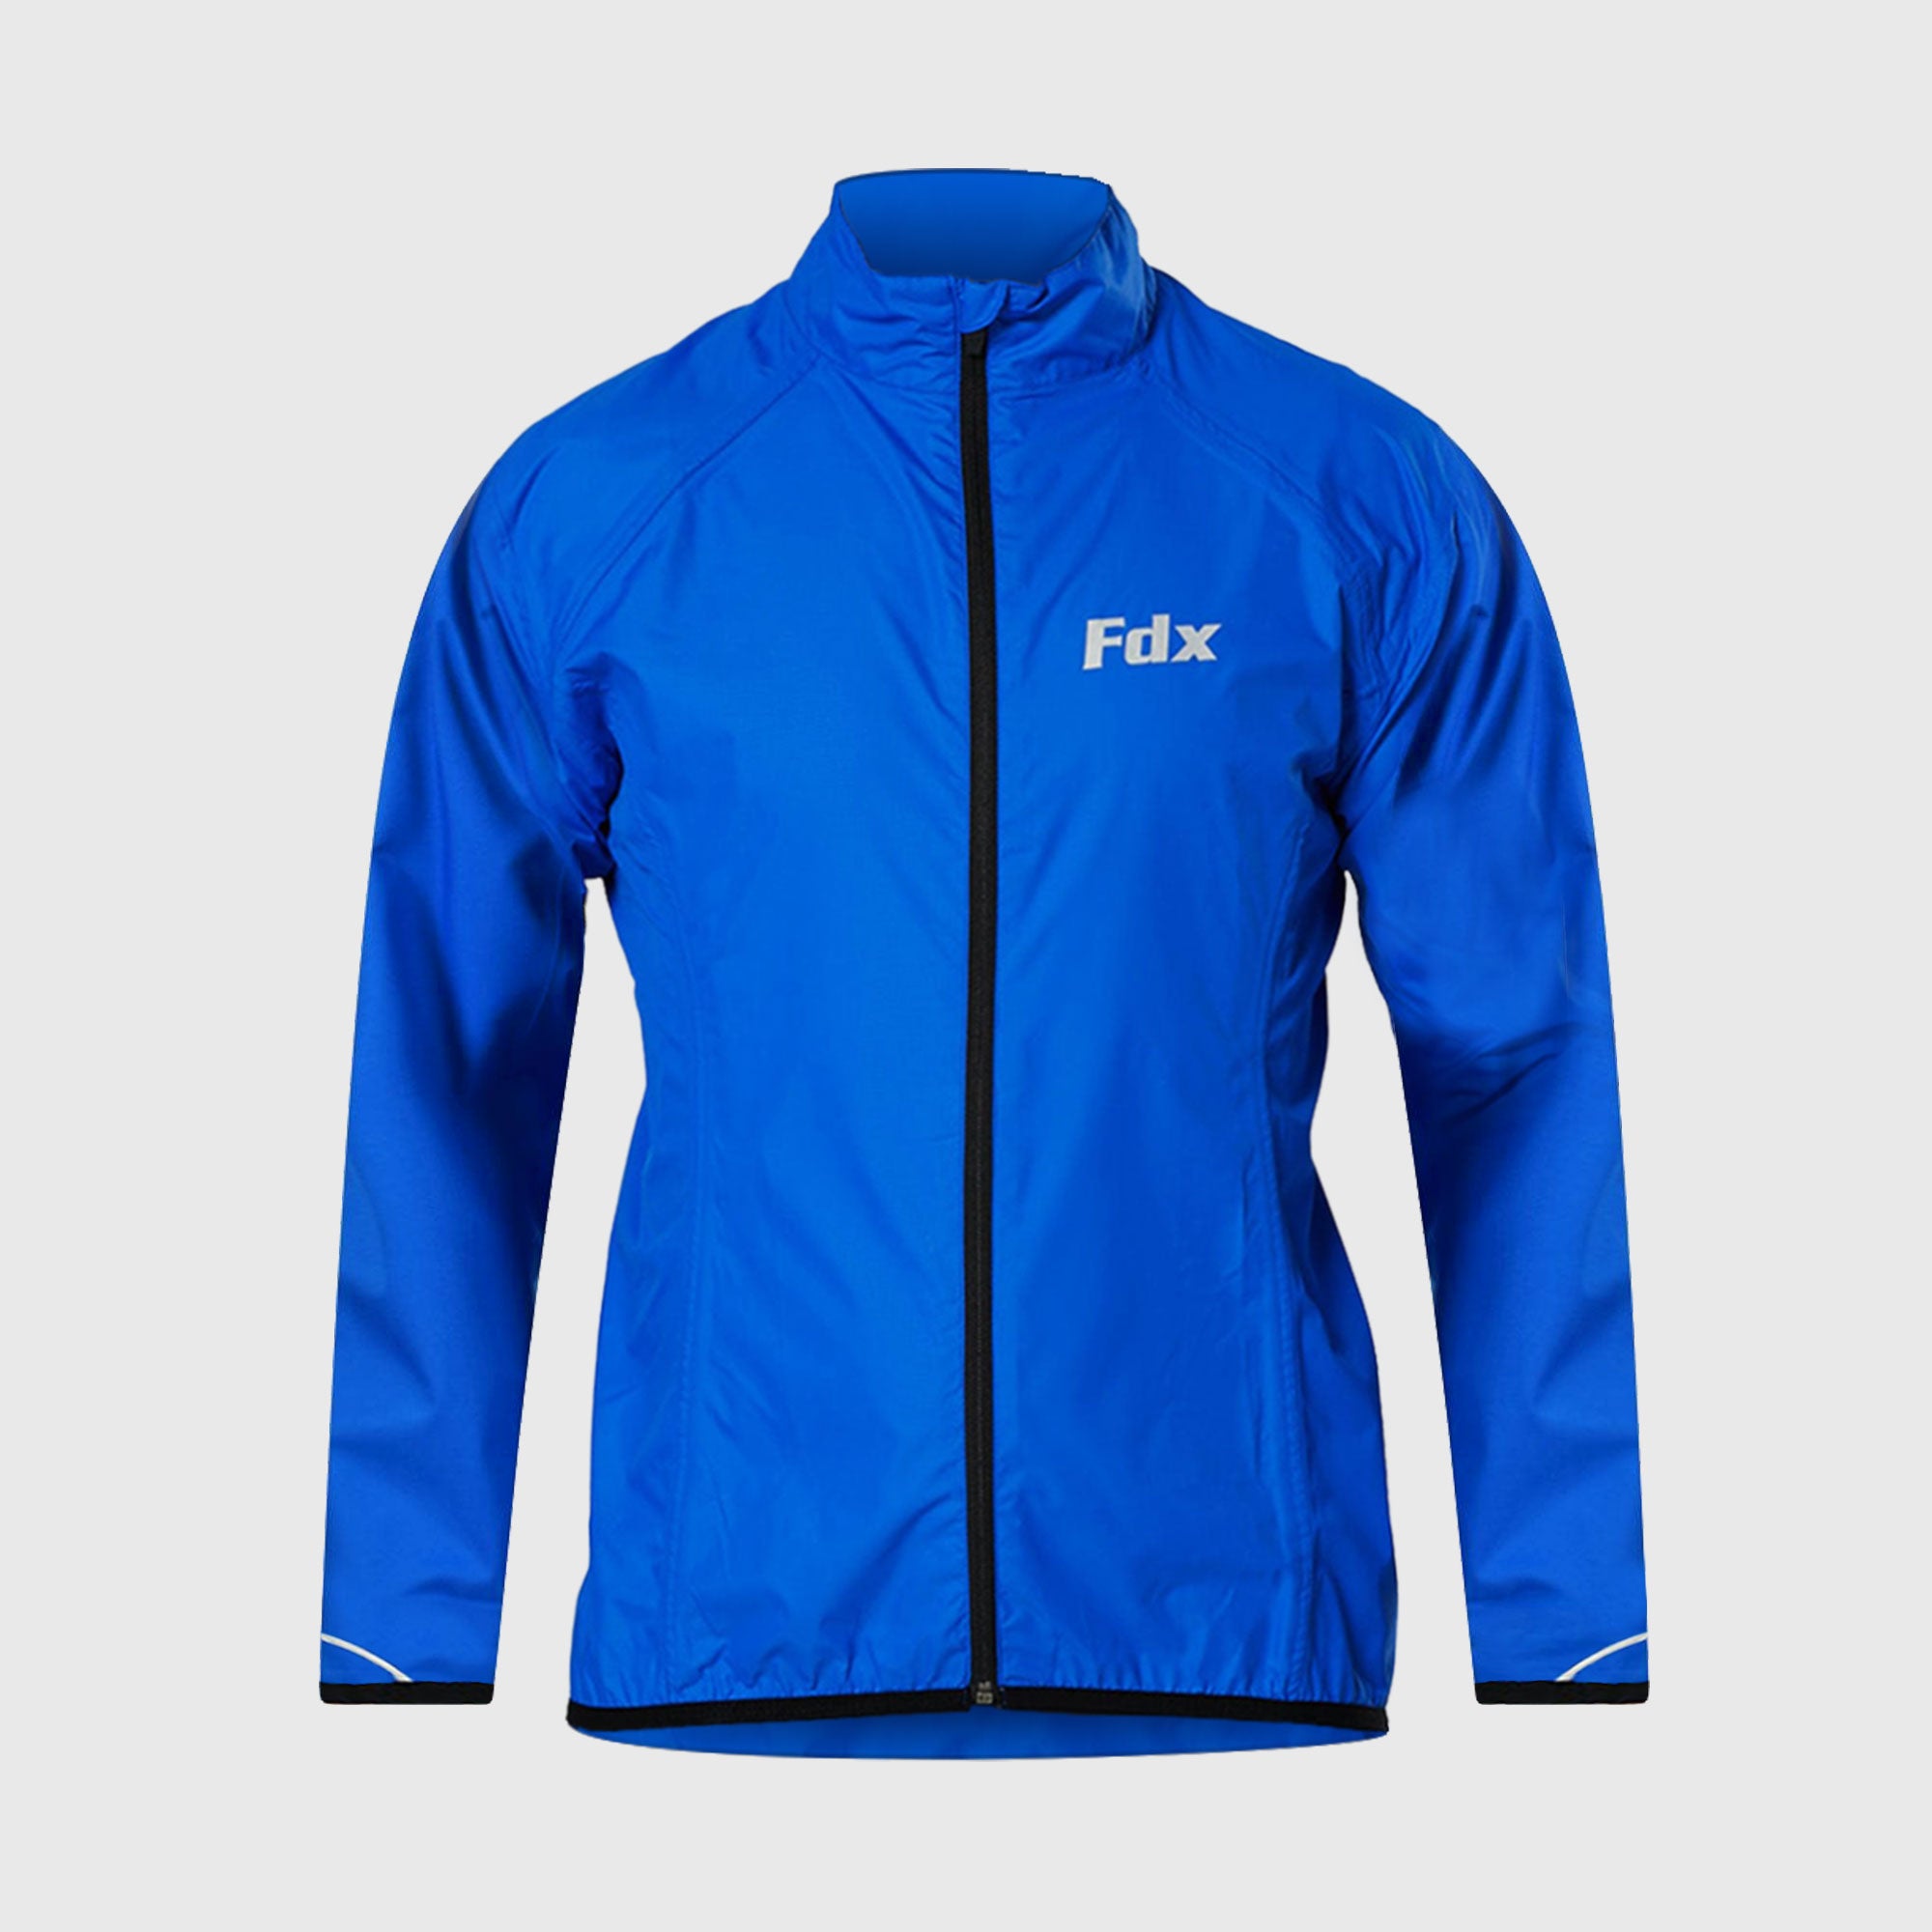 Fdx J20 Blue Windproof & Waterproof Men's Cycling Jacket